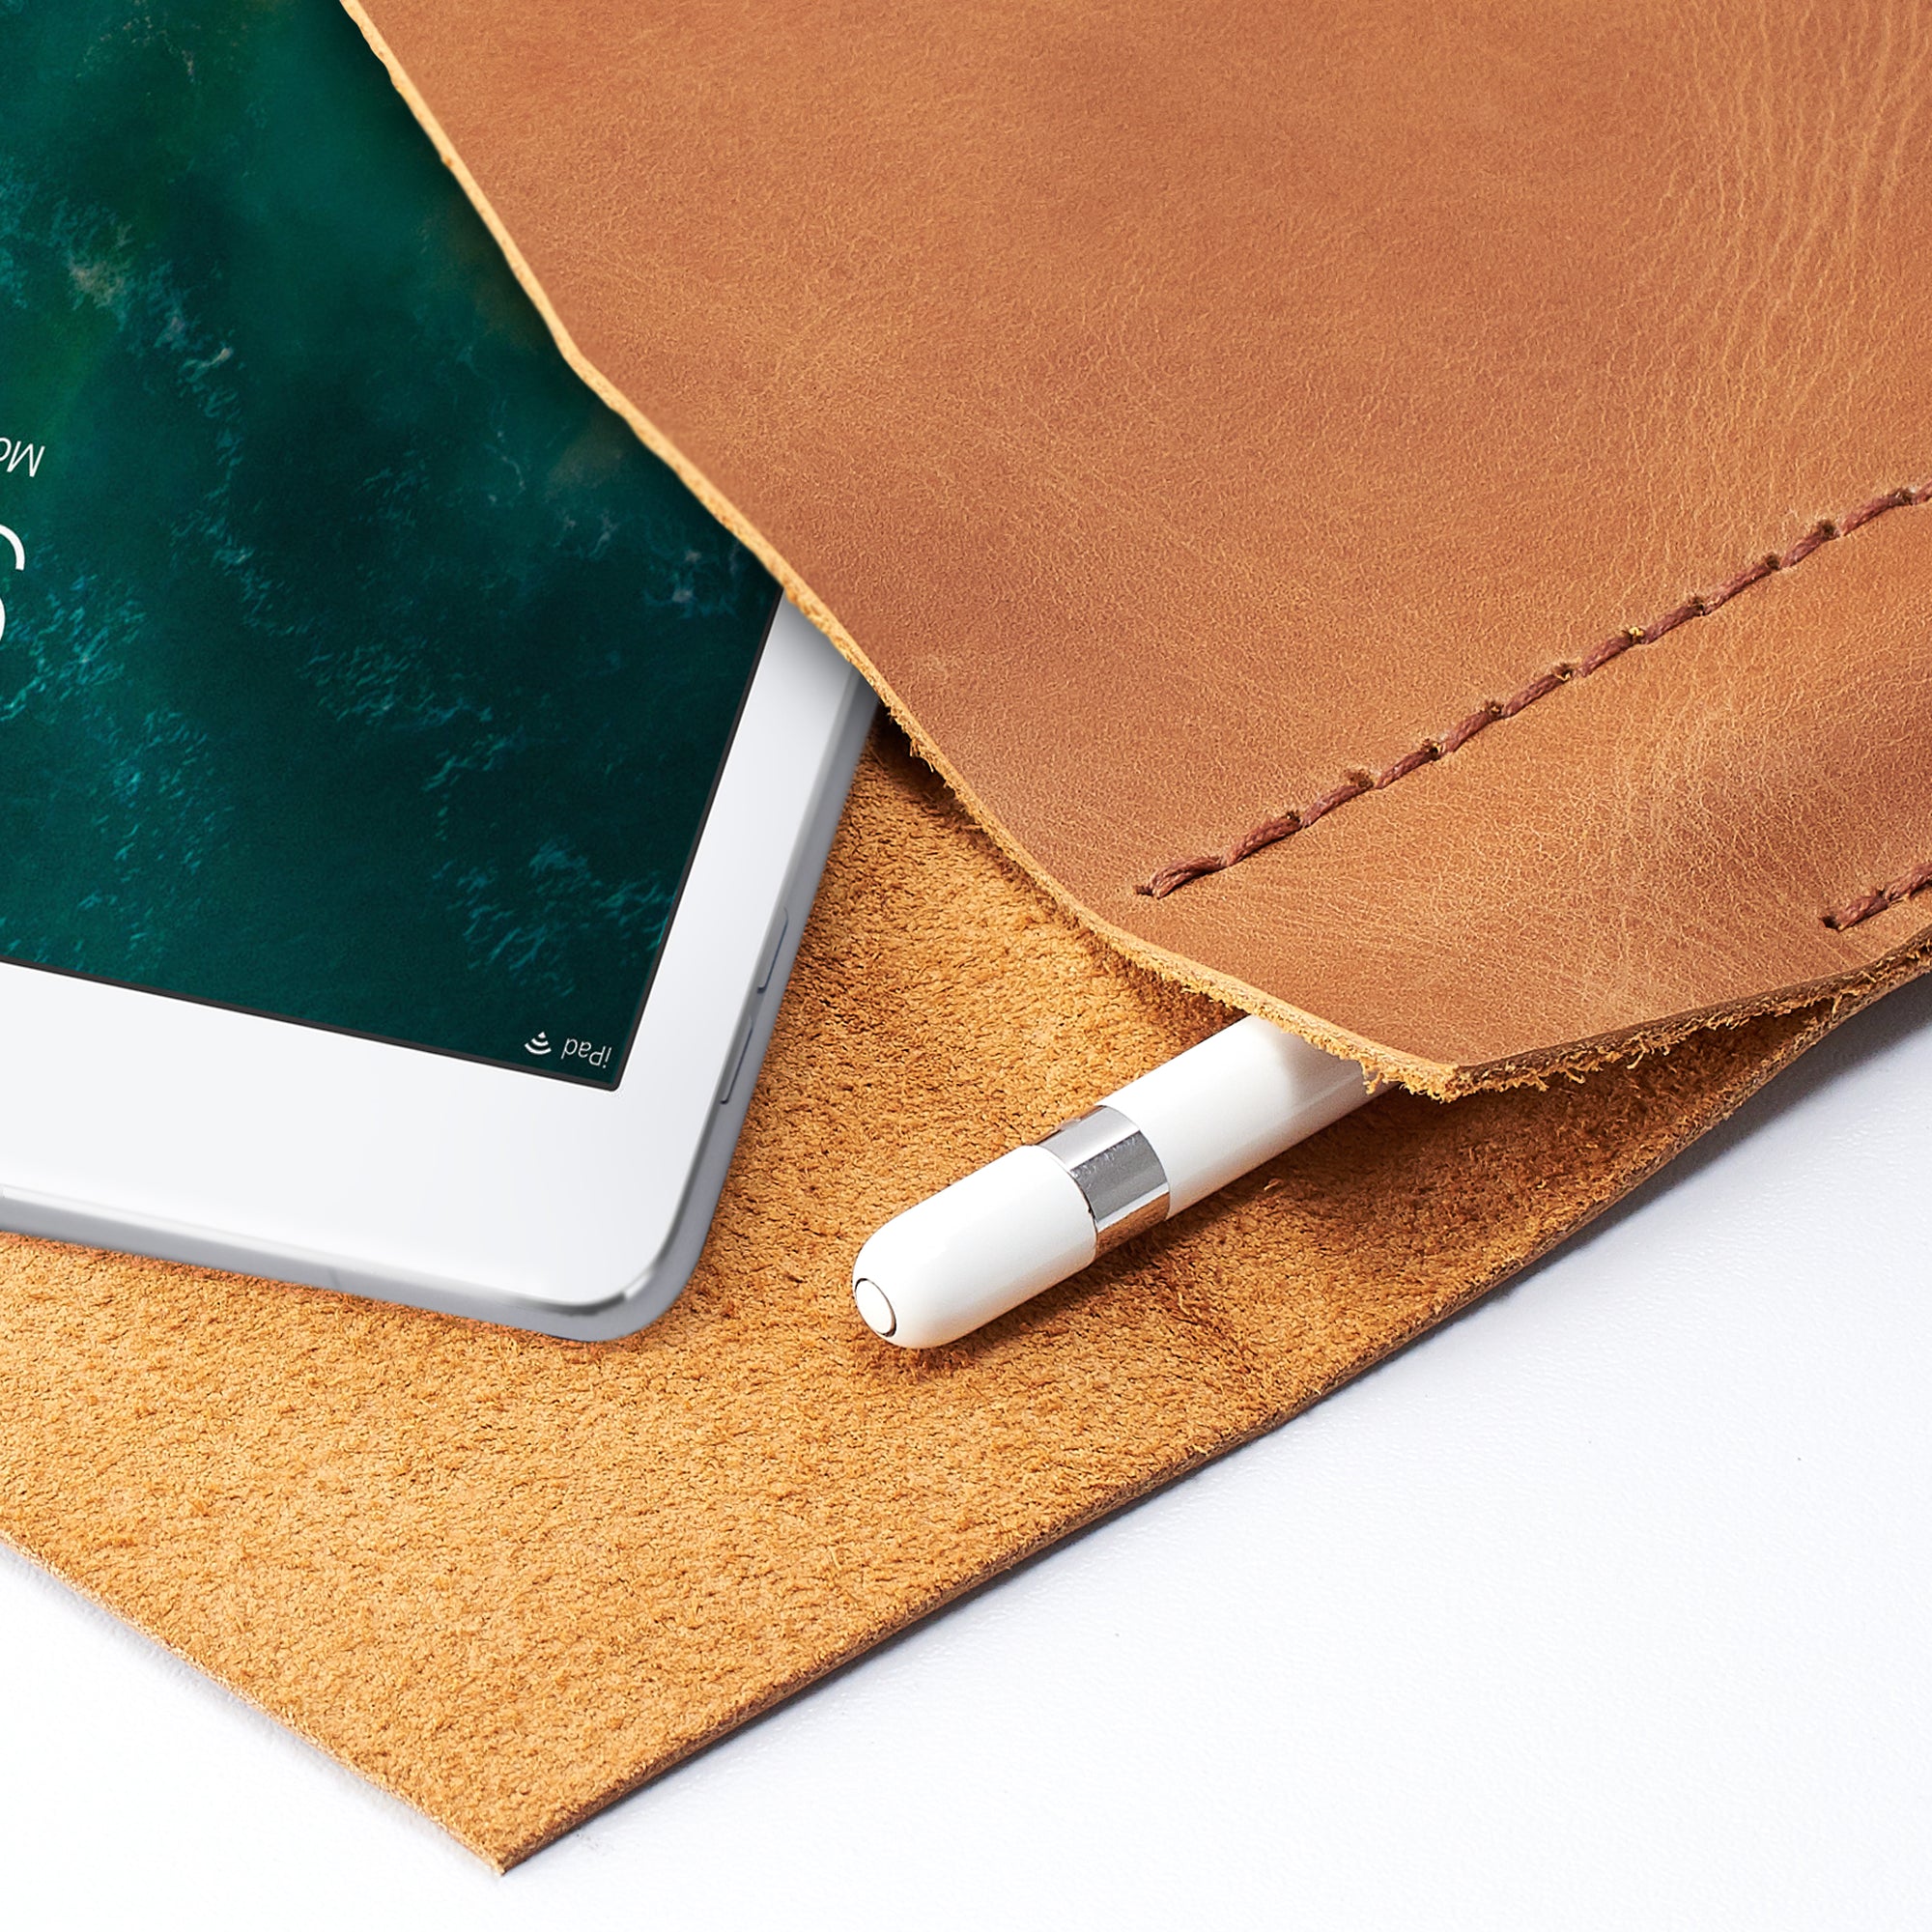 Apple Pencil Holder. iPad Sleeve. iPad Leather Case Tan With Apple Pencil Holder by Capra Leather